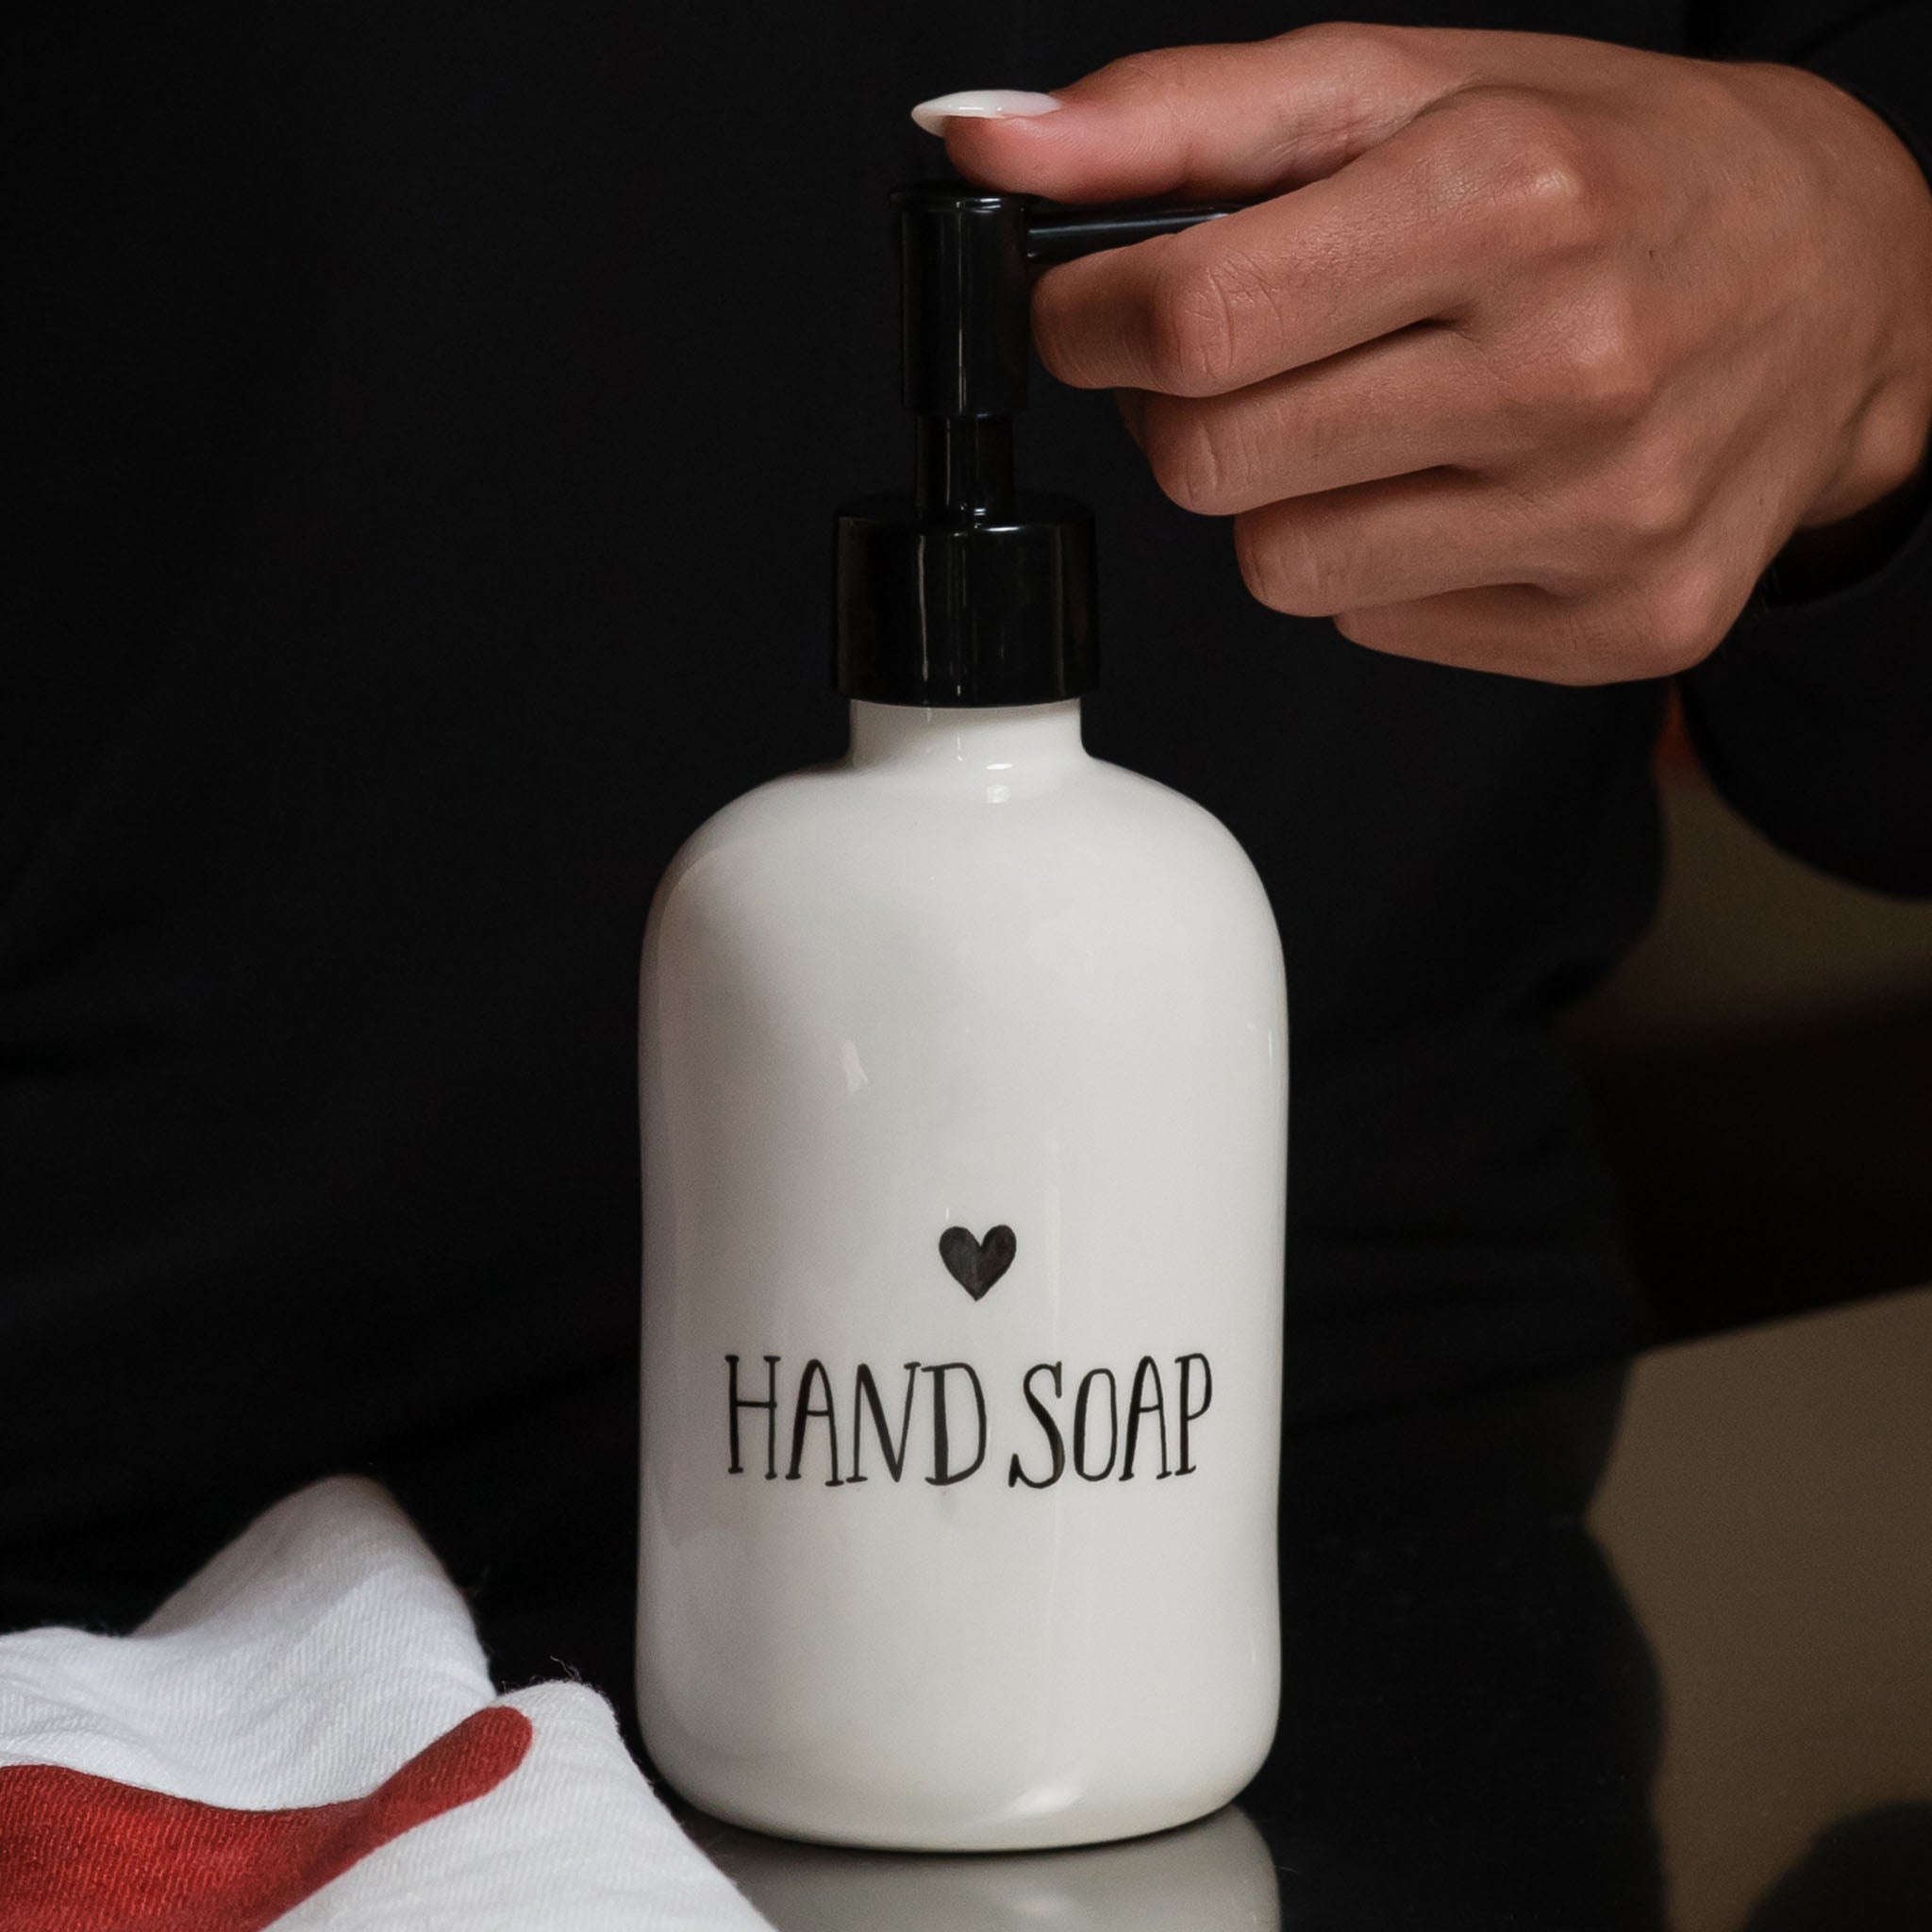 Dosasapone bianco con decoro Hand Soap